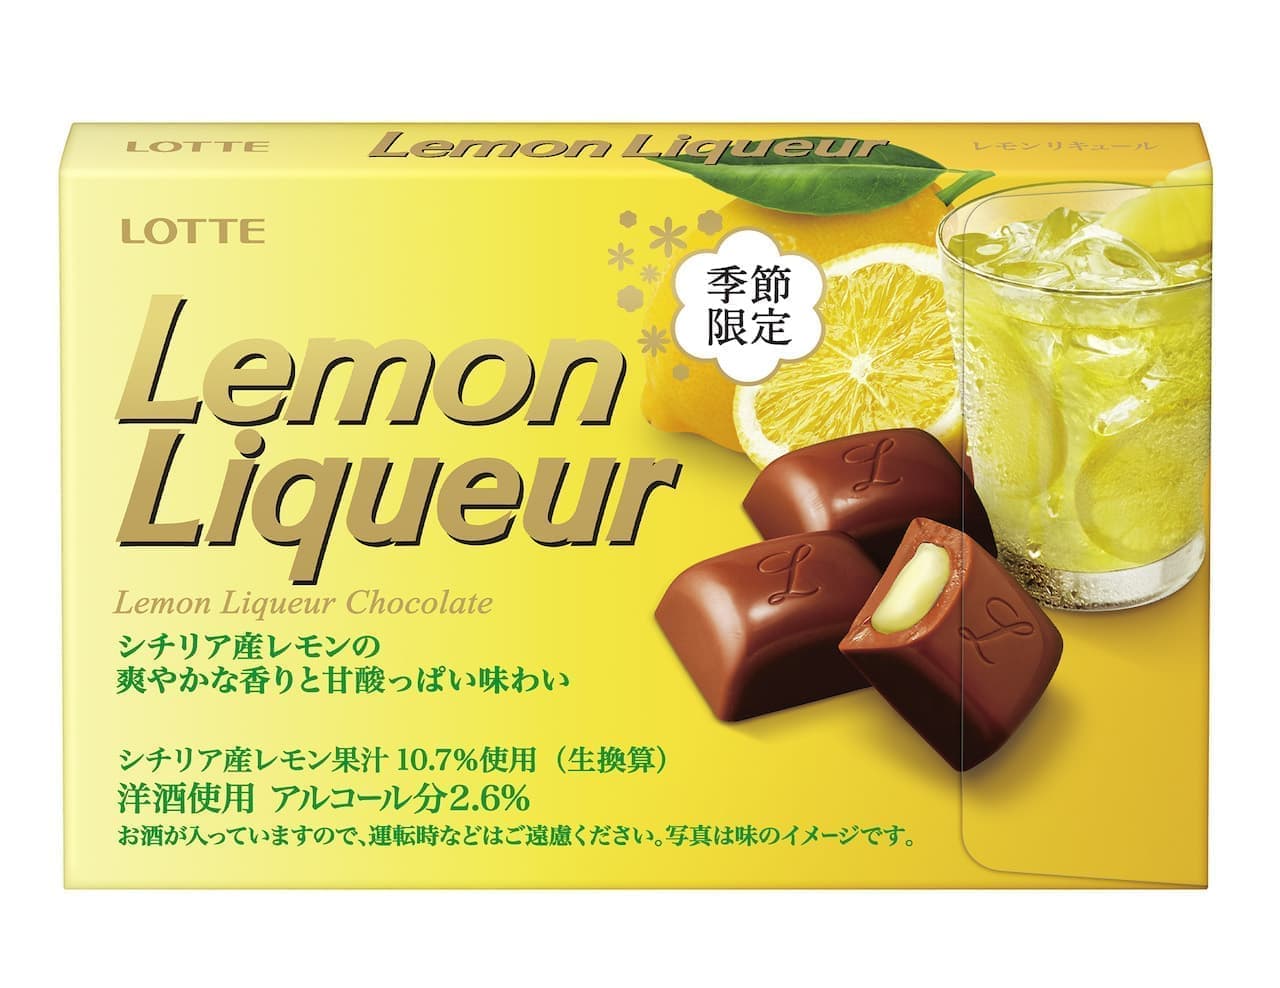 Lotte "Lemon liqueur